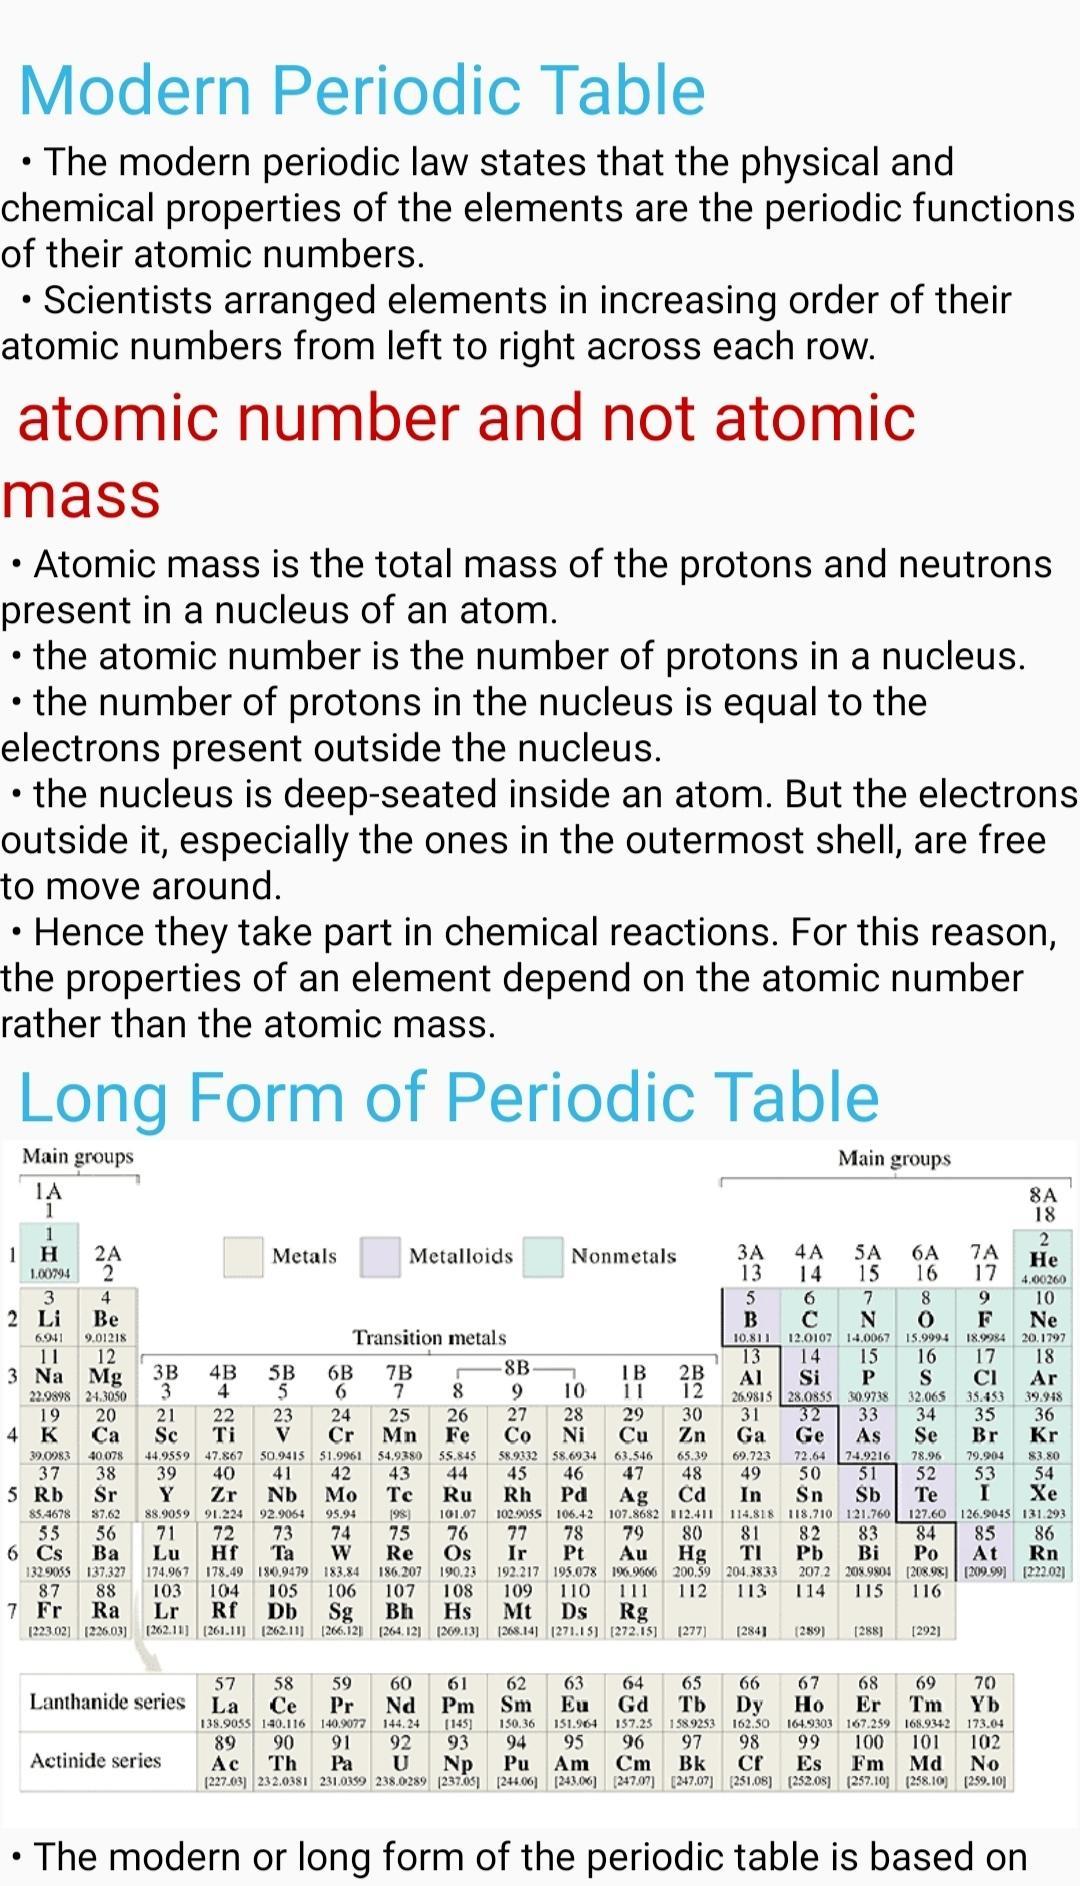 Chemistry e theories 0.19 Screenshot 2